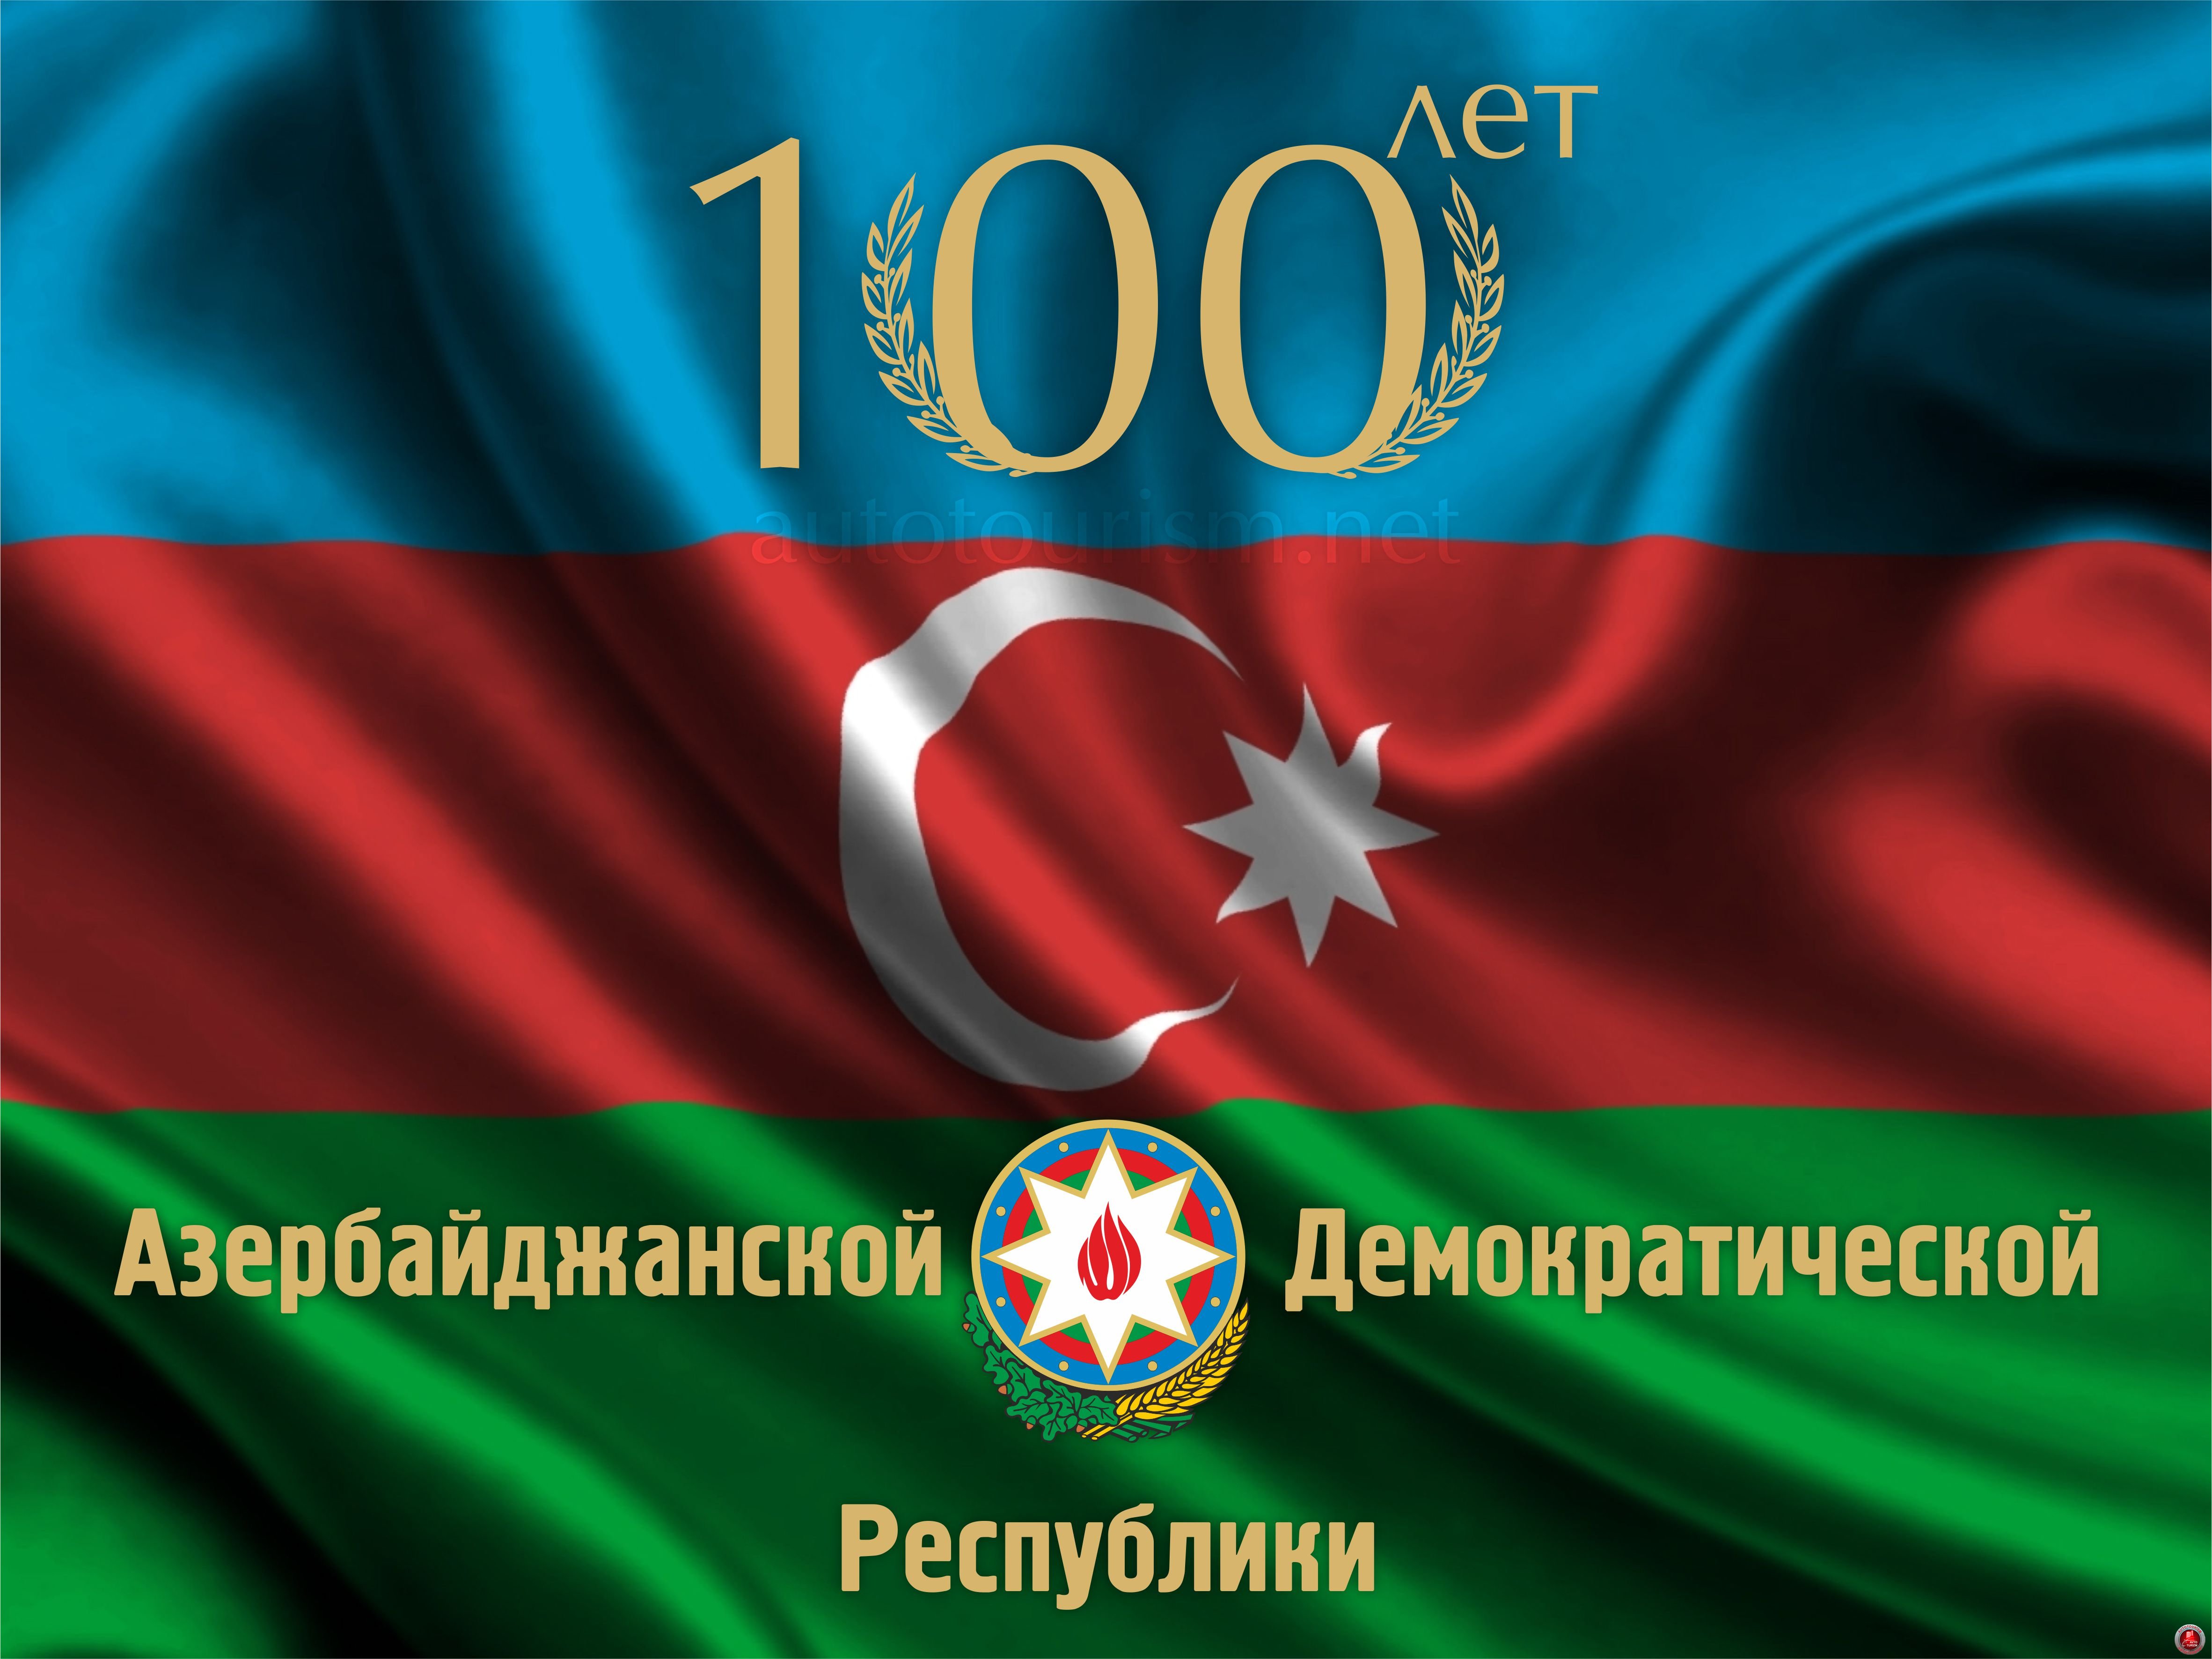 28 мая исполняется 100 лет со дня создания Азербайджанской Демократической Республики (АДР).